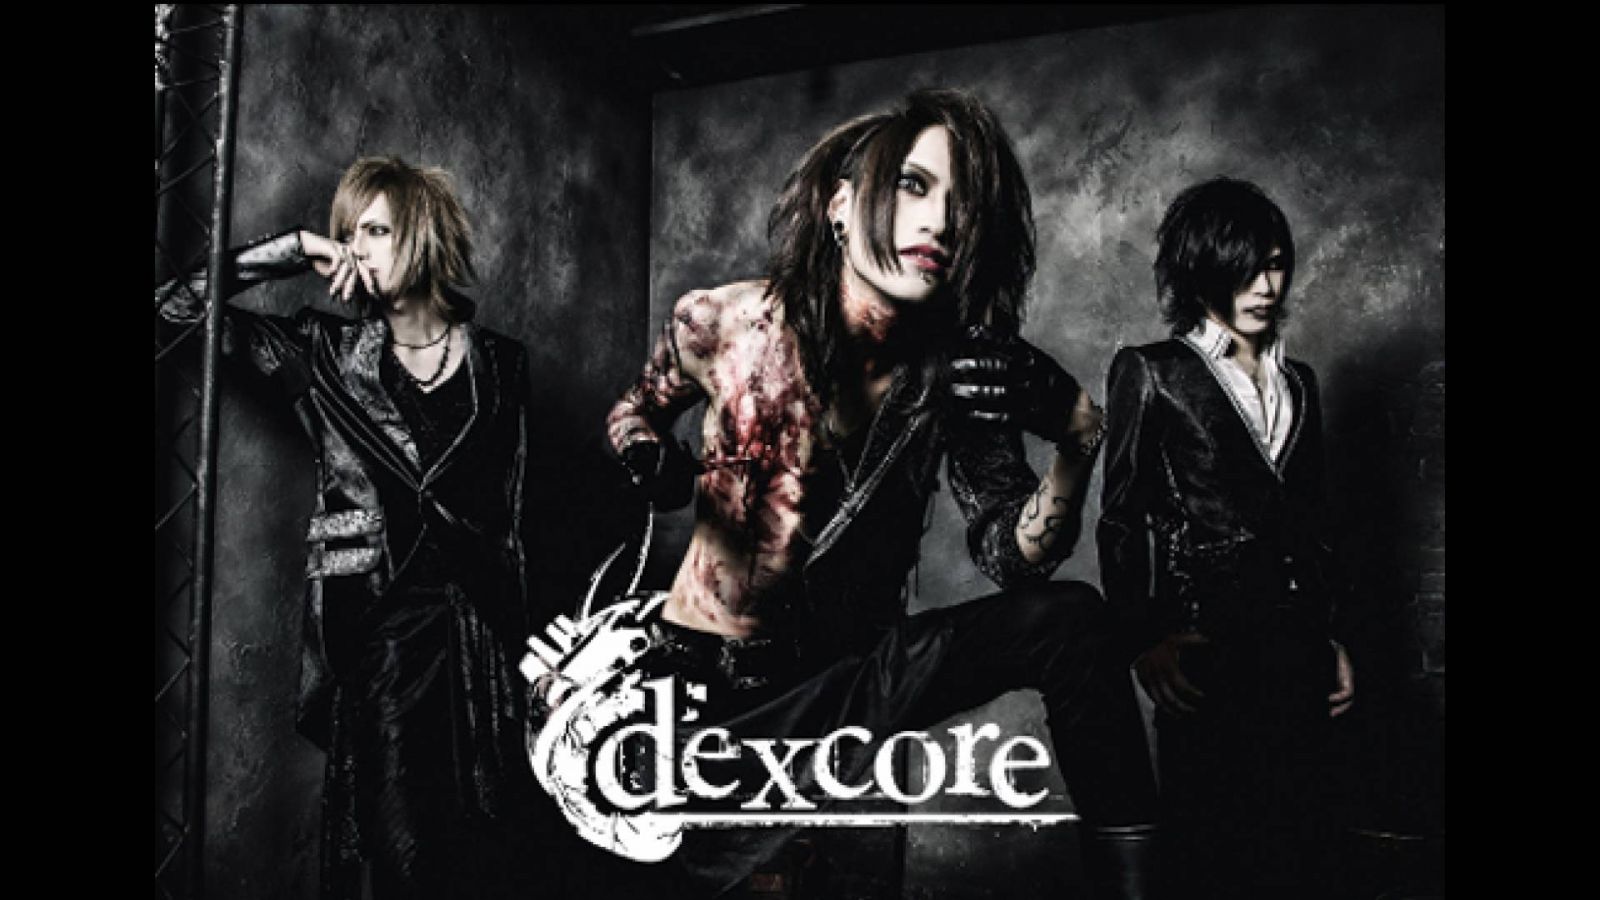 dexcore esittelee uuden laulun joka maanantai © Jelly Records